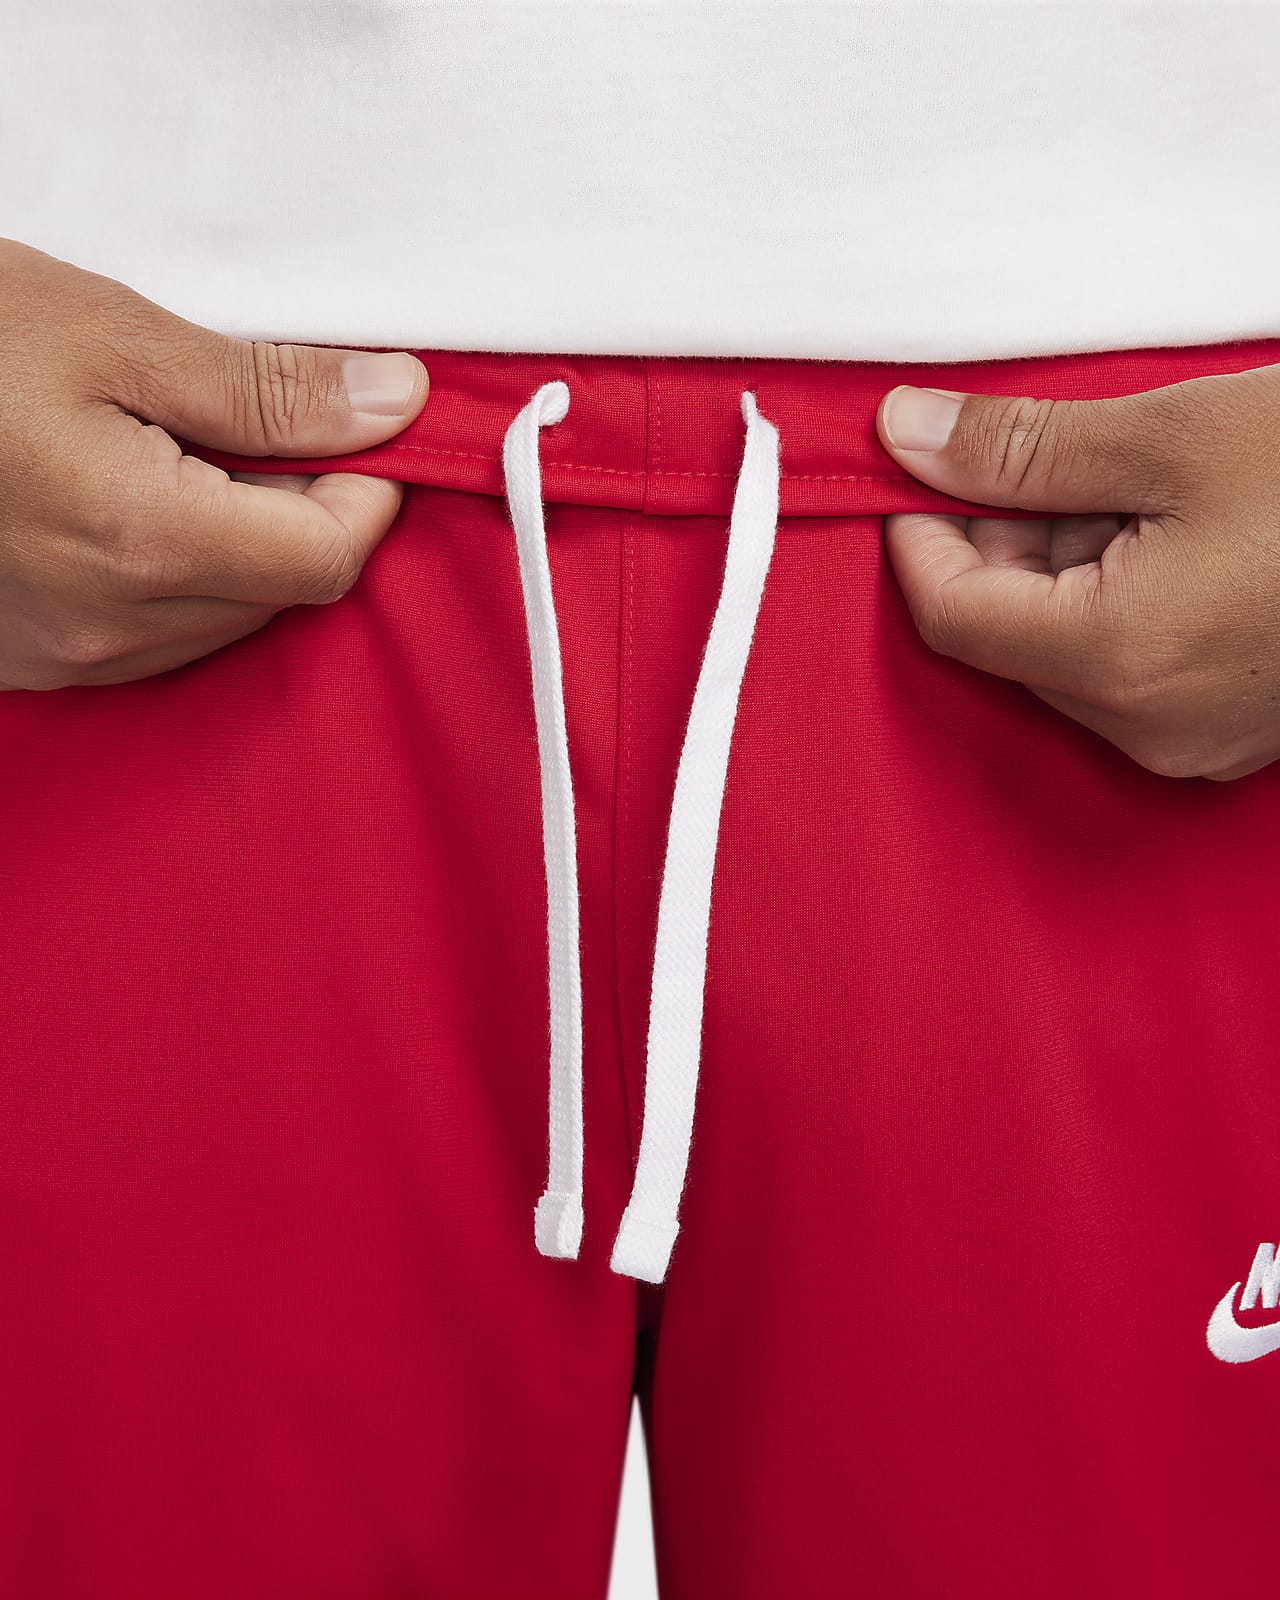 Survêtement en maille de polyester Nike Sportswear Sport